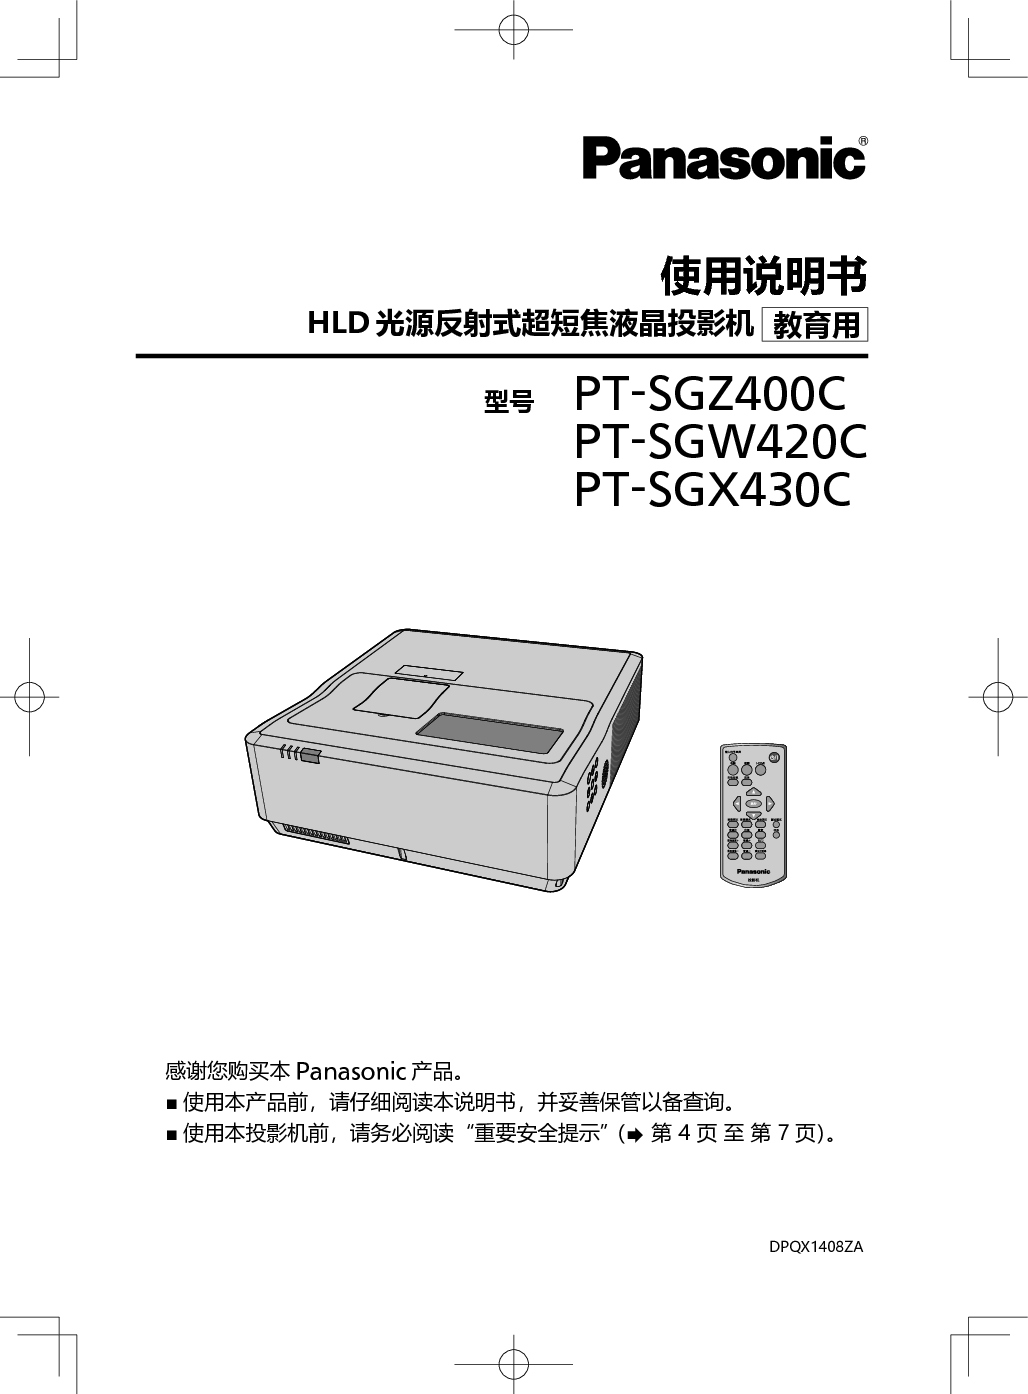 松下 Panasonic PT-SGW420C 使用说明书 封面